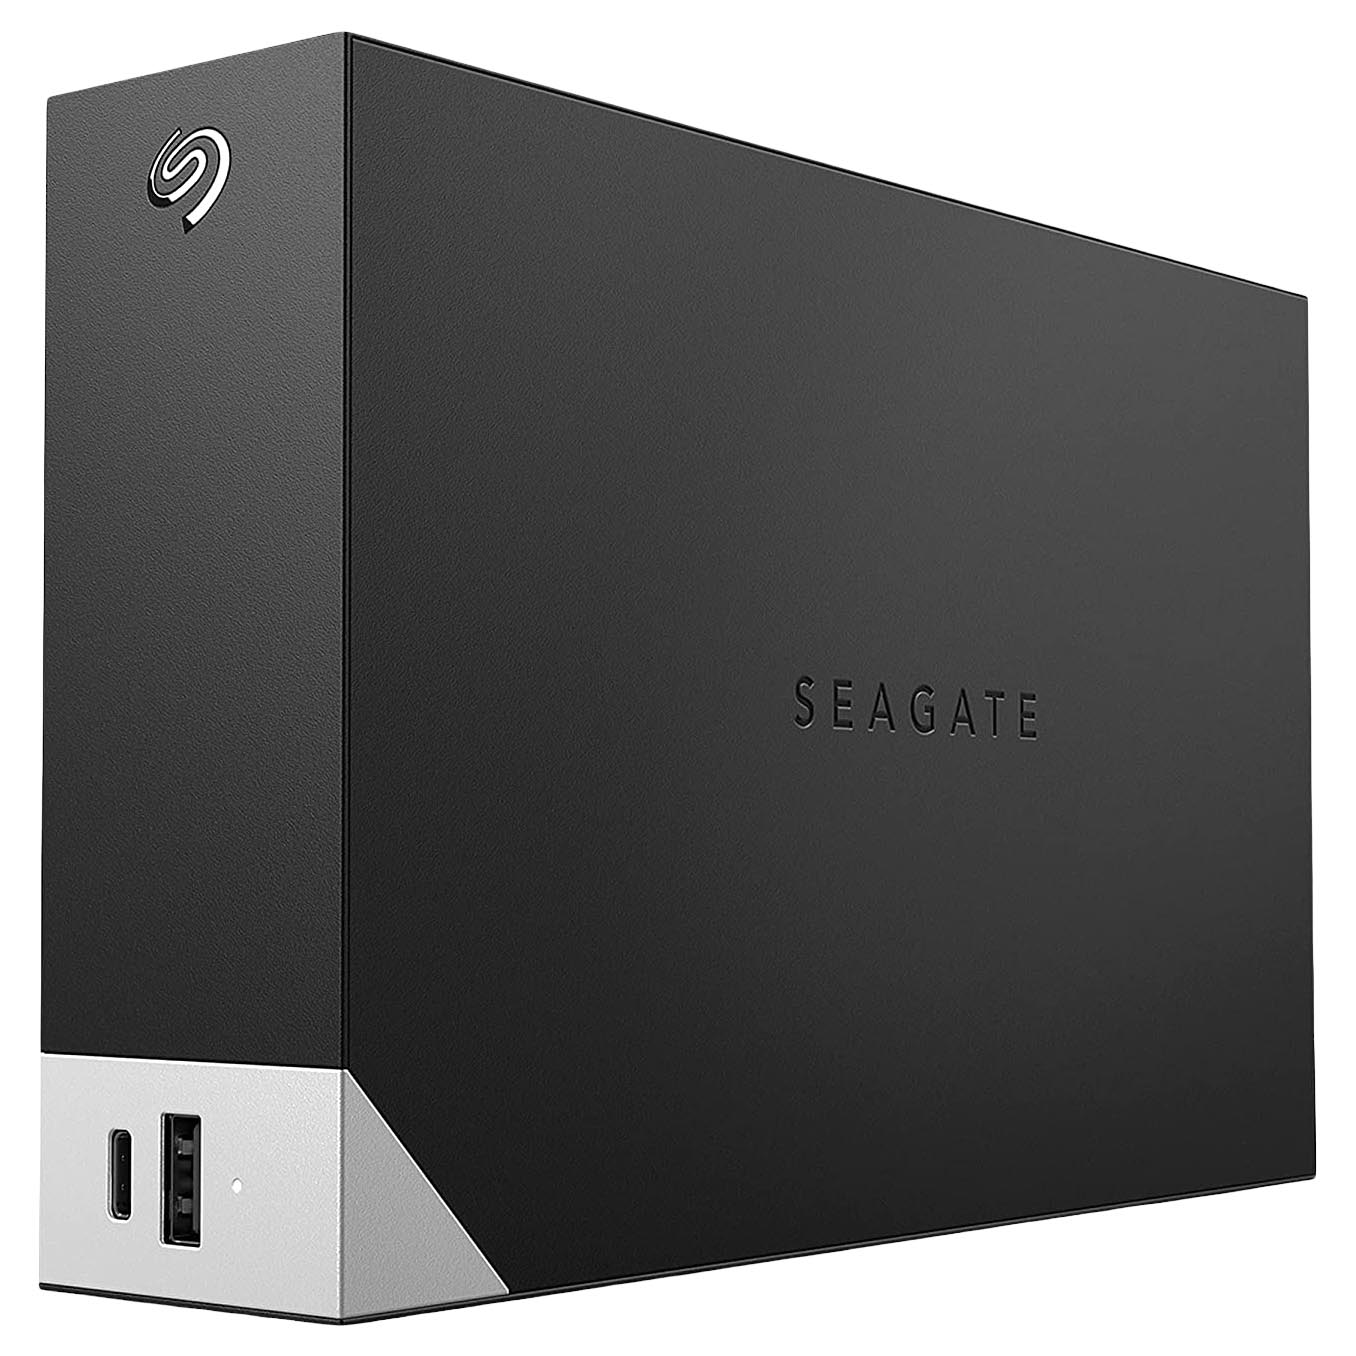 Внешний жесткий диск Seagate One Touch, STLC14000400, 14Тб, 3.5 внешний жесткий диск 2 5 5 tb usb 3 0 seagate one touch серебристый